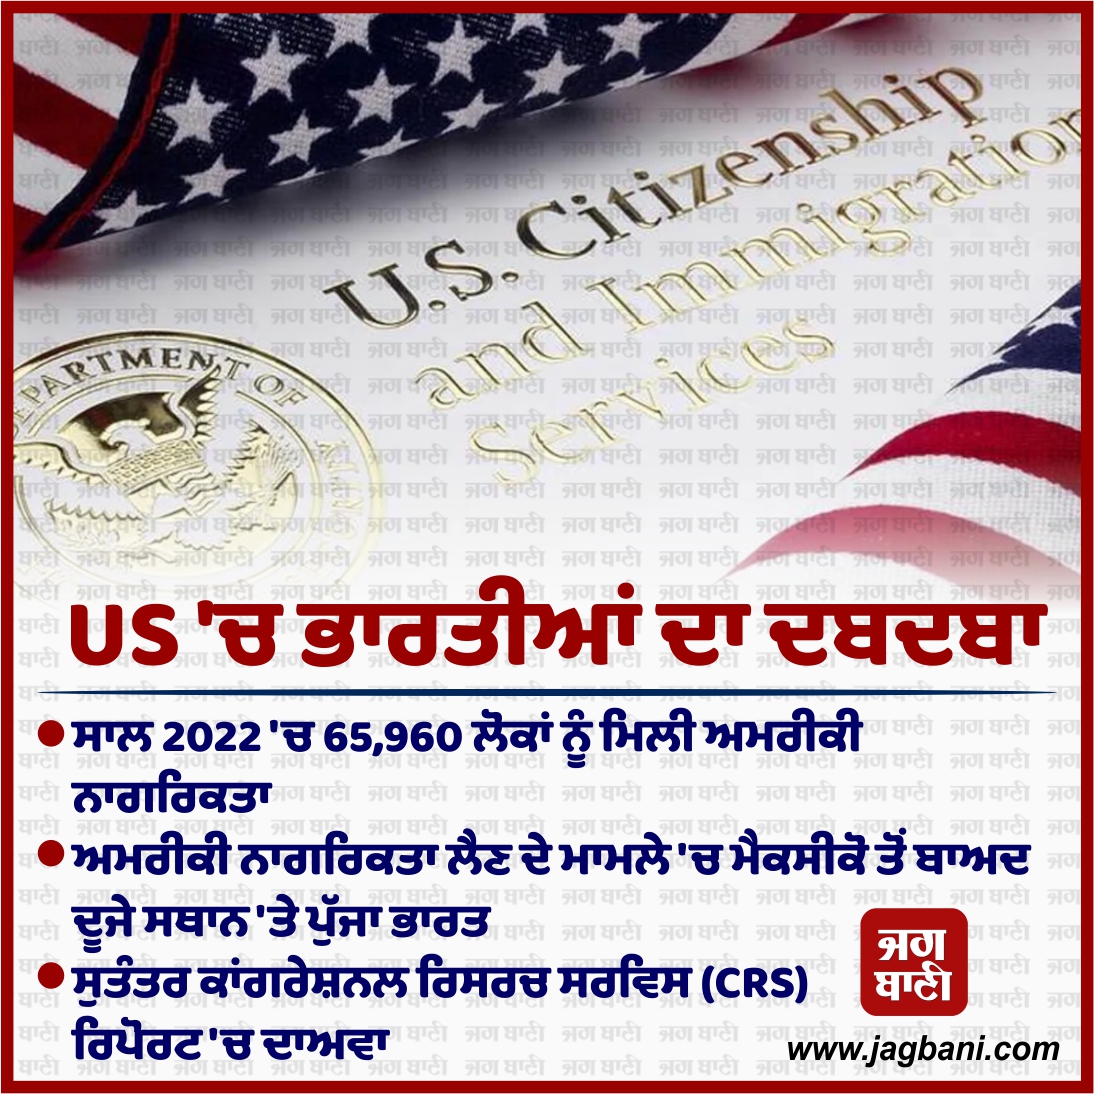 US 'ਚ ਭਾਰਤੀਆਂ ਦਾ ਦਬਦਬਾ

#66KIndians #Officially #AmericanCitizens #CRSreport #India